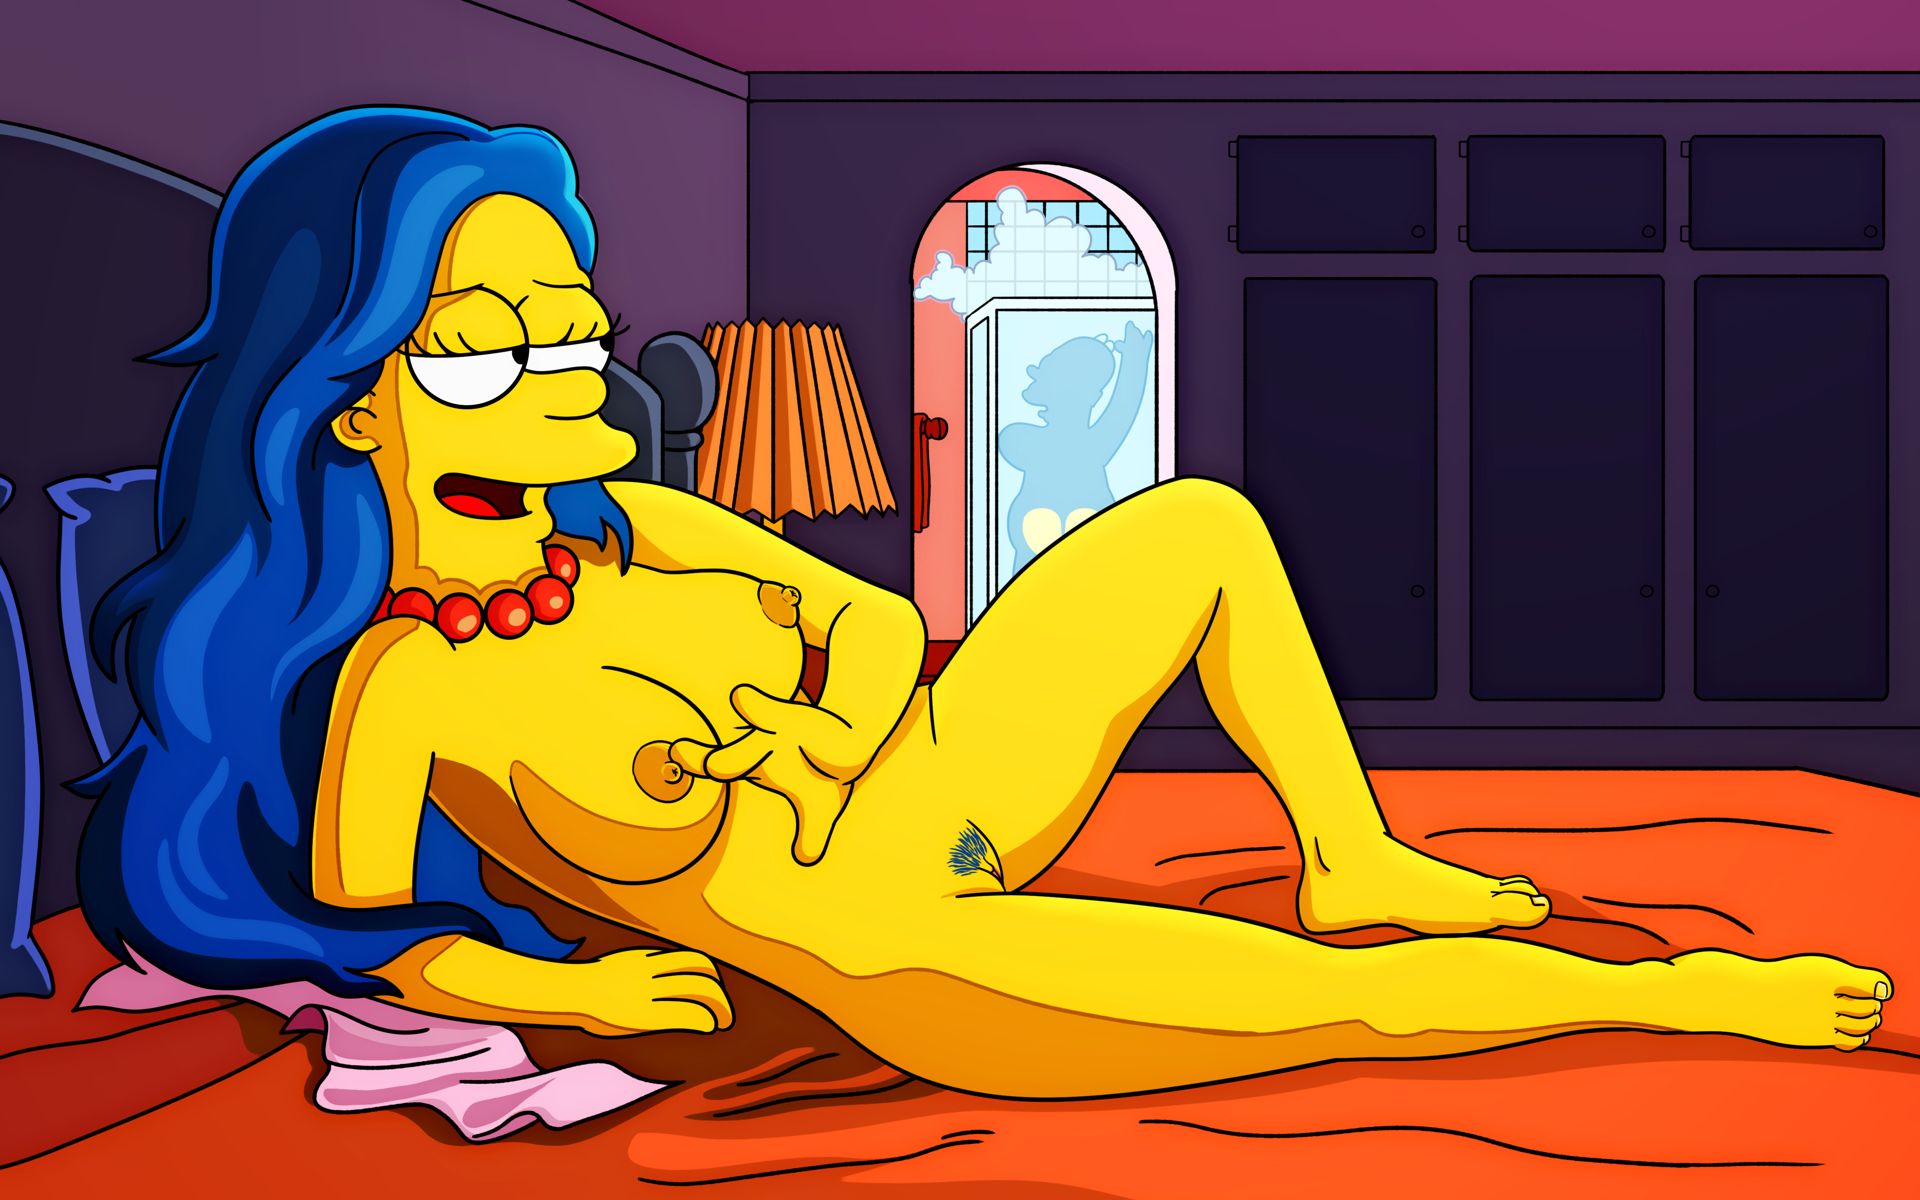 голая сисястая Мардж дожидается Гомера в постели, сисястая Мардж Симпсон рисунок 02